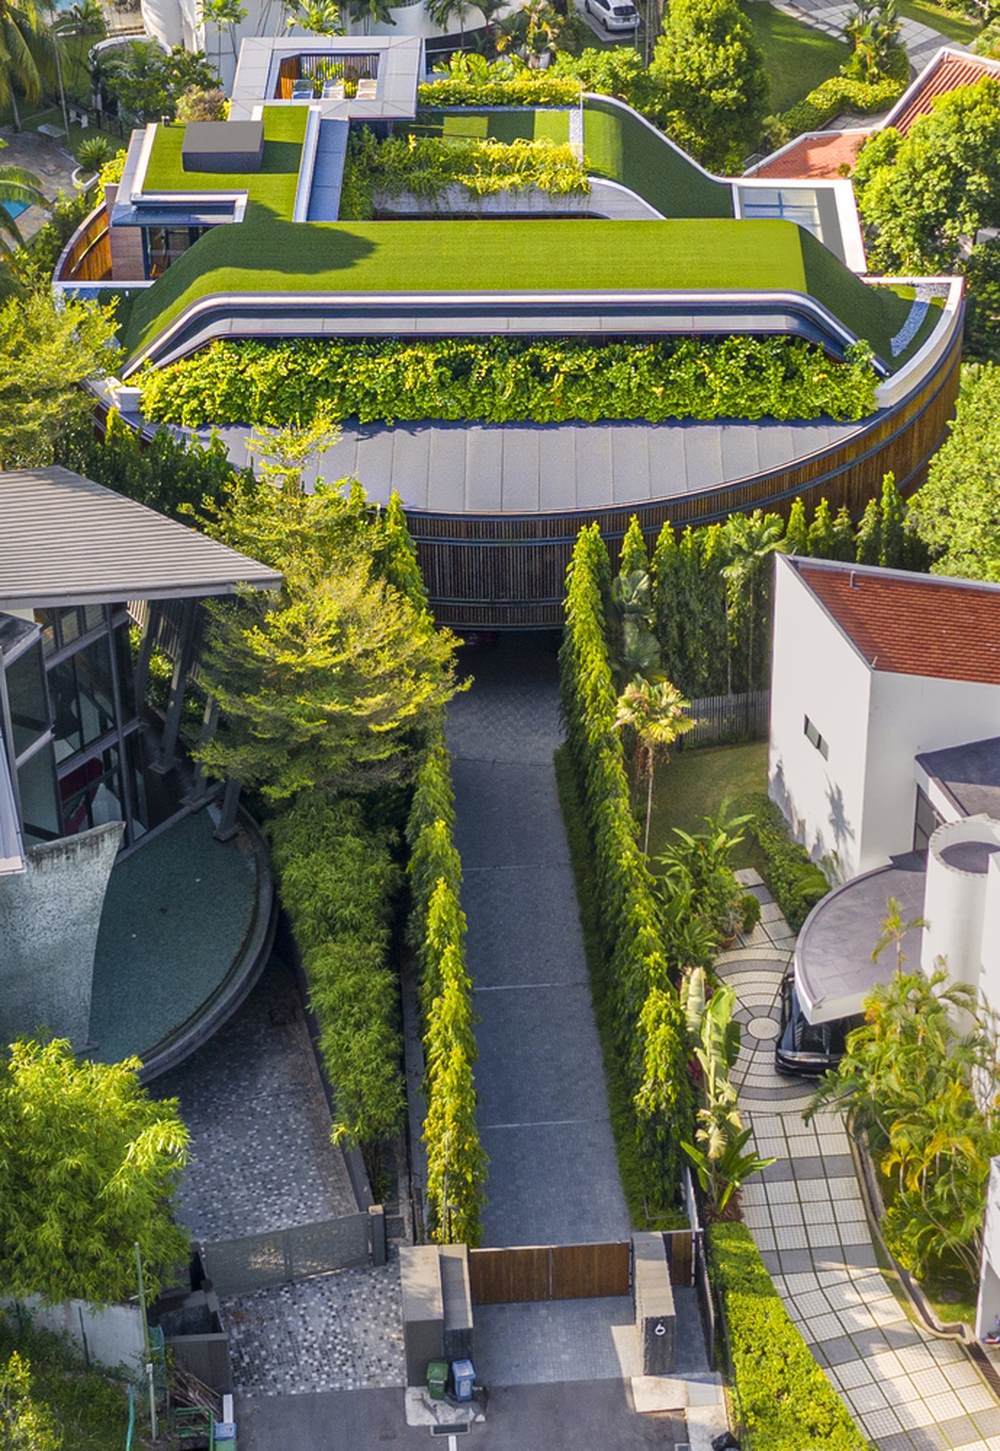 Biệt thự nổi bật giữa khu phố nhờ phủ cỏ xanh trên mái nhà - Ảnh 1.